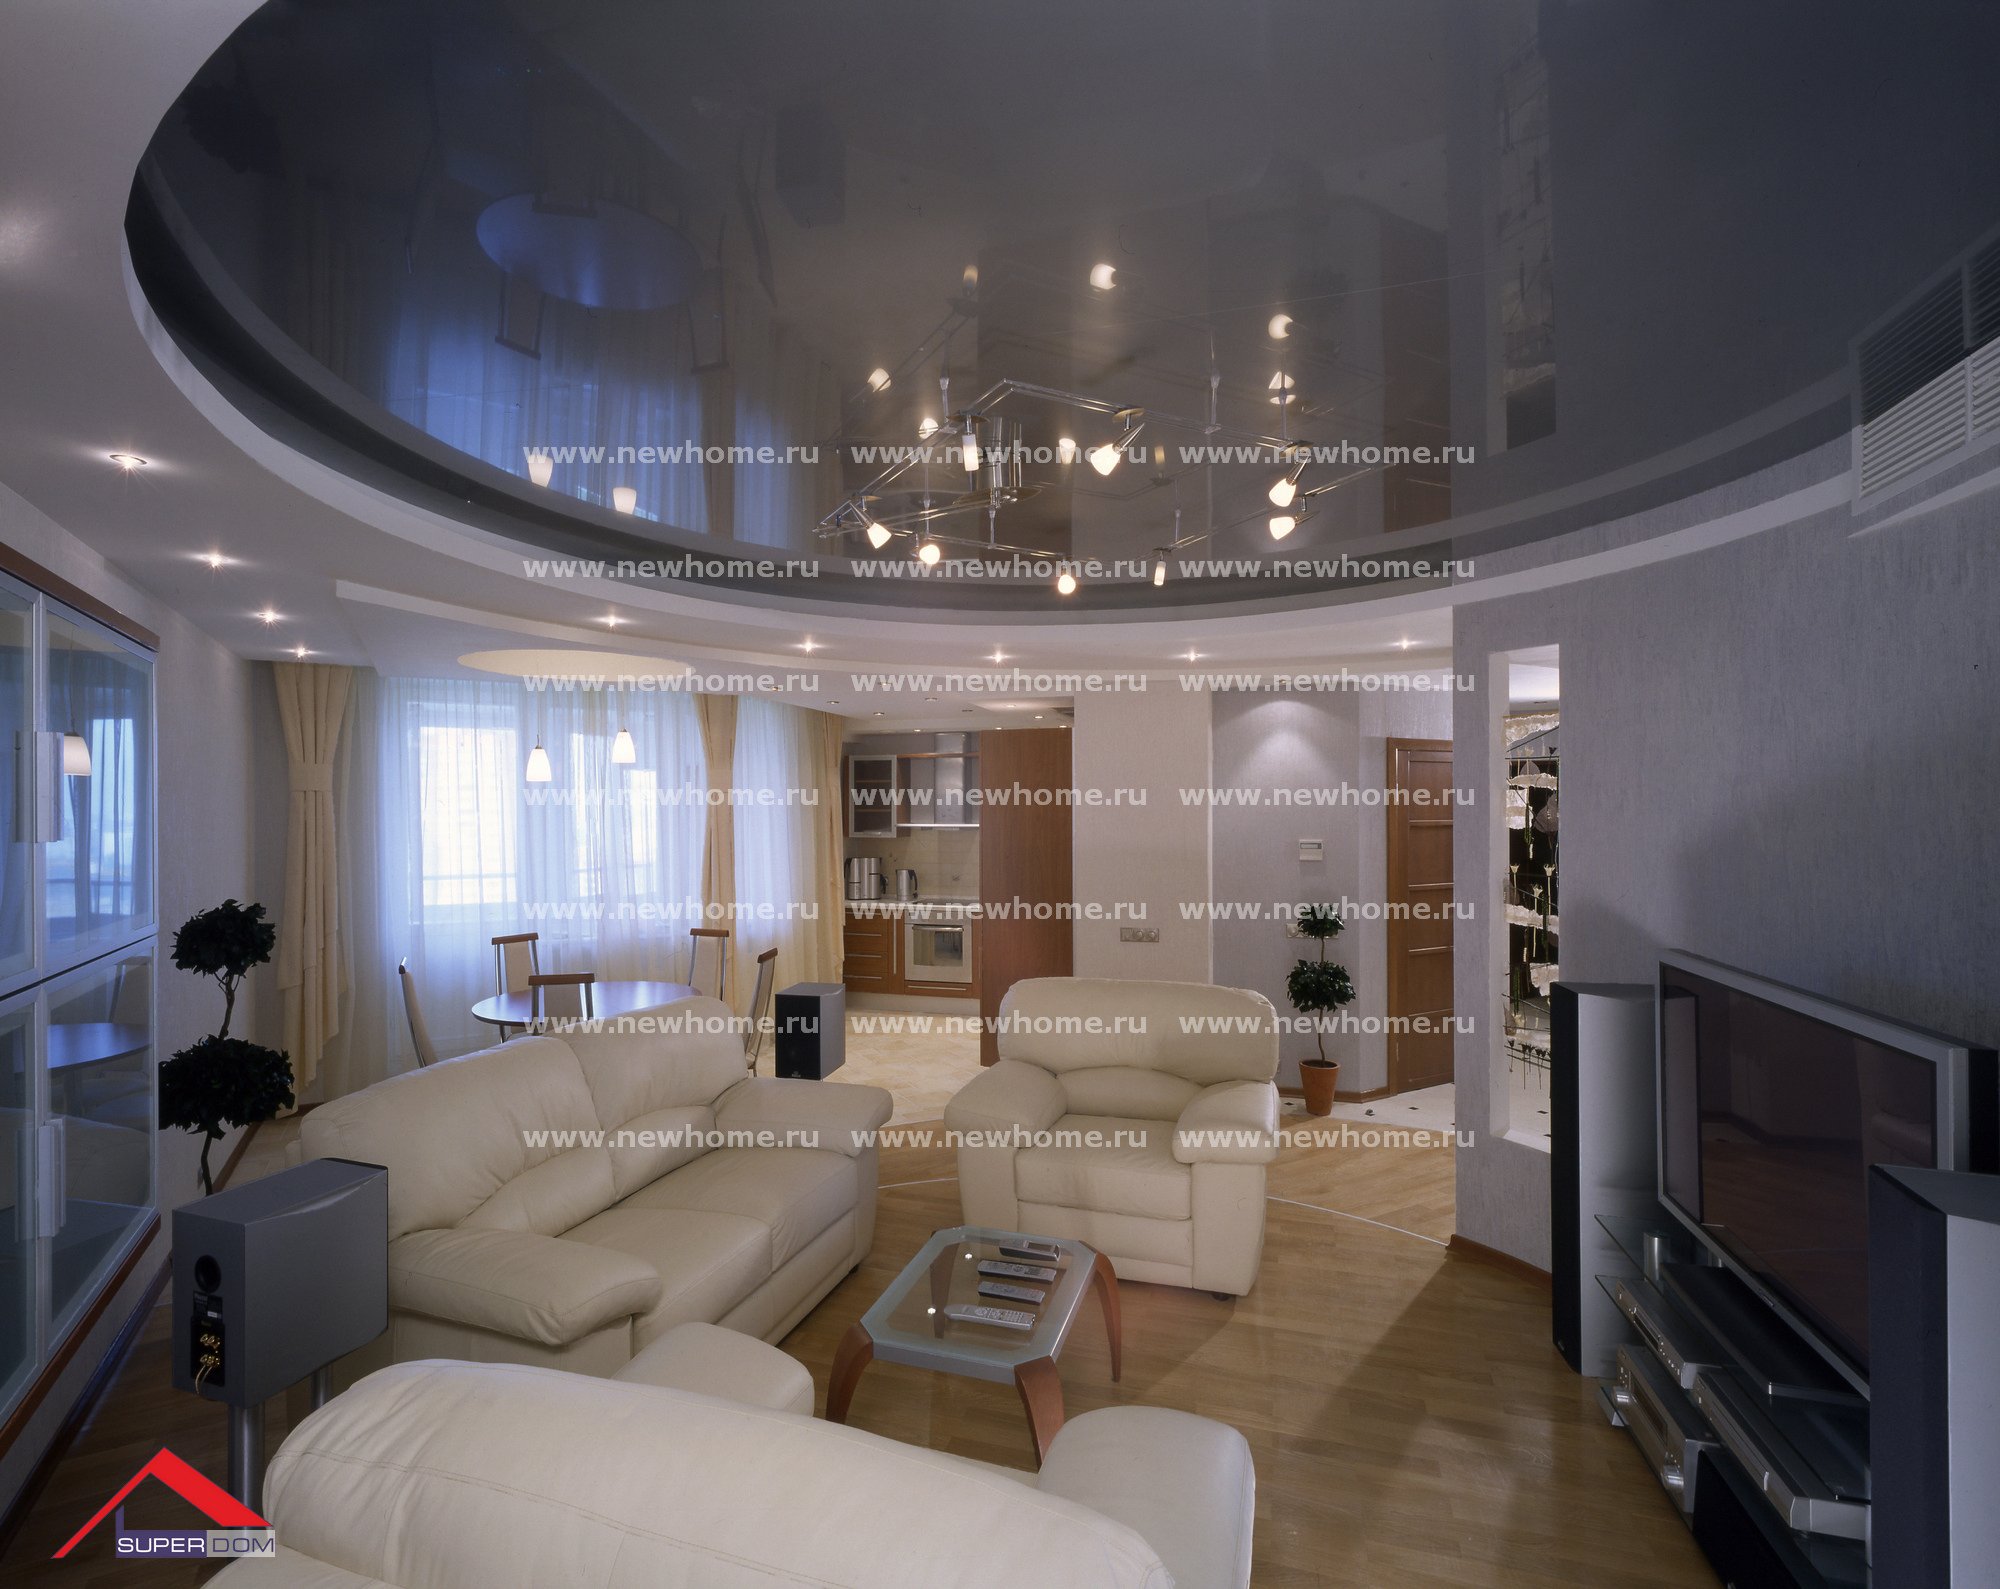 Двухуровневые натяжные потолки в гостиную (56 фото): варианты в стиле «классика» для зала, 2 уровня с подсветкой, современные дизайнерские решения двух уровненных моделей